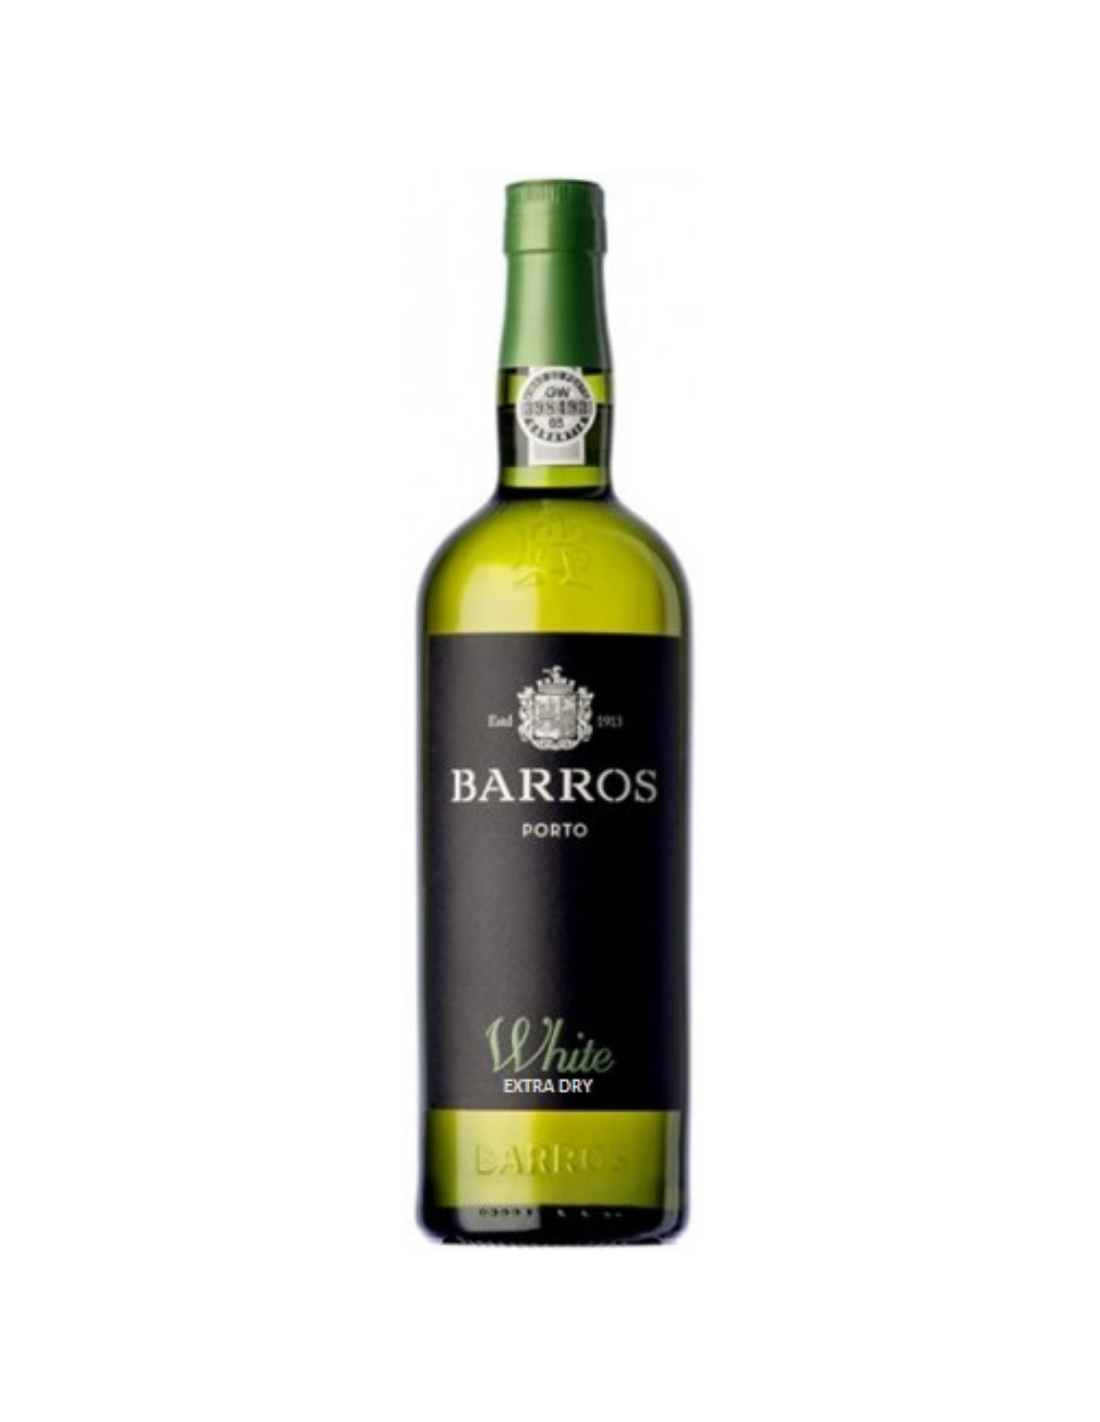 Vin porto alb sec, Barros White Extra Dry, 0.75L, 20% alc., Portugalia alcooldiscount.ro